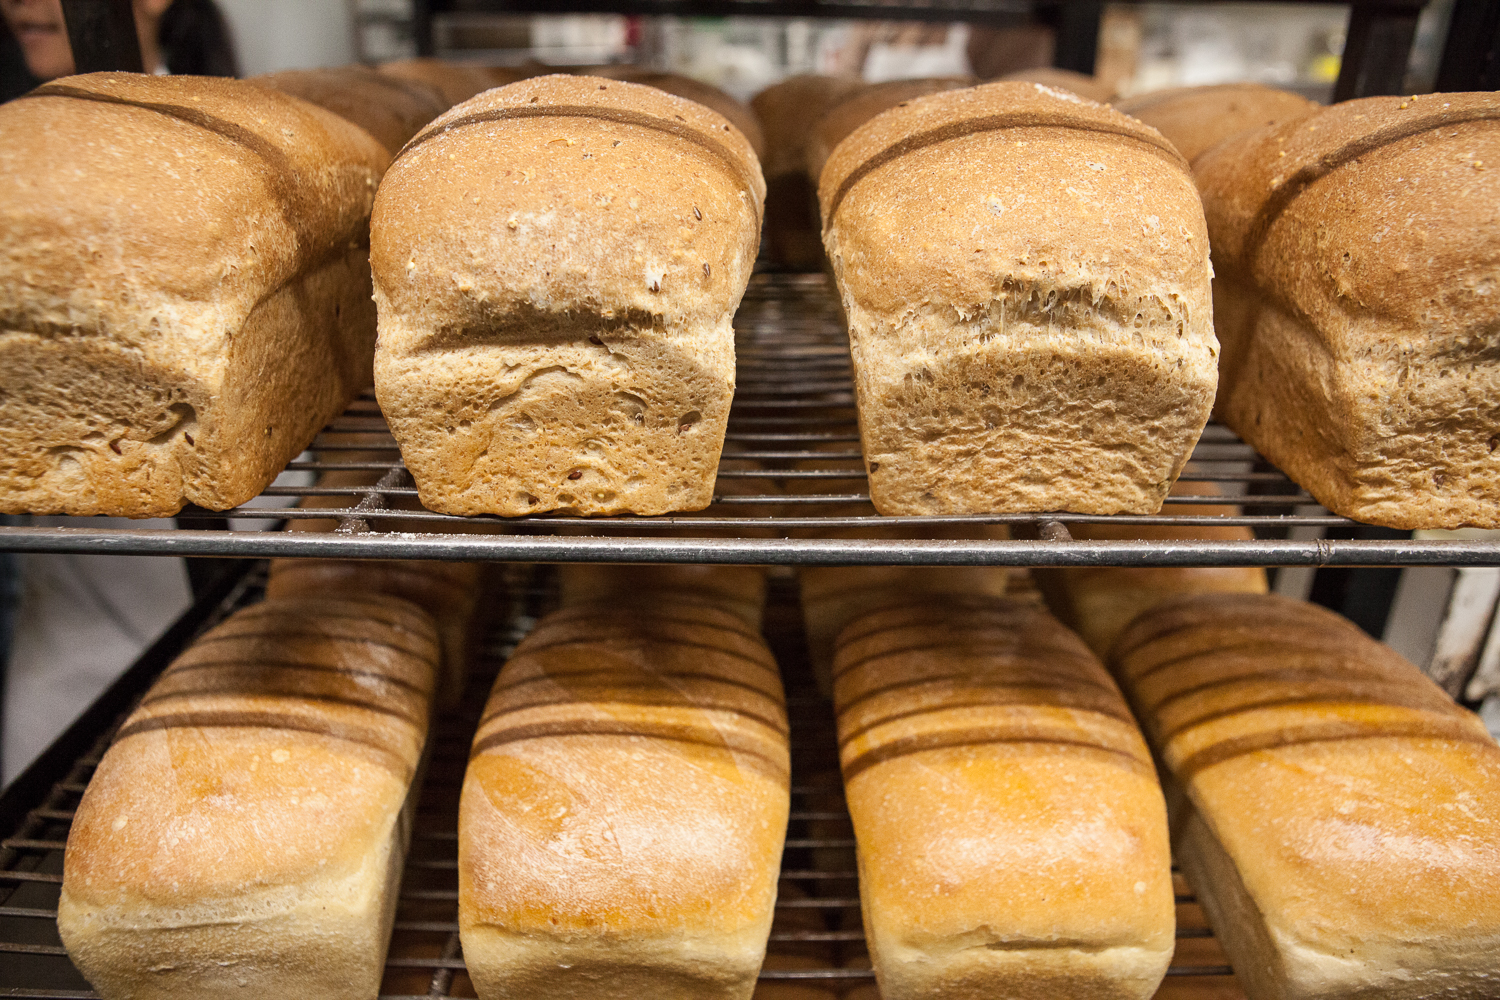 Fresh Baked Bread from Mana Foods Bakery